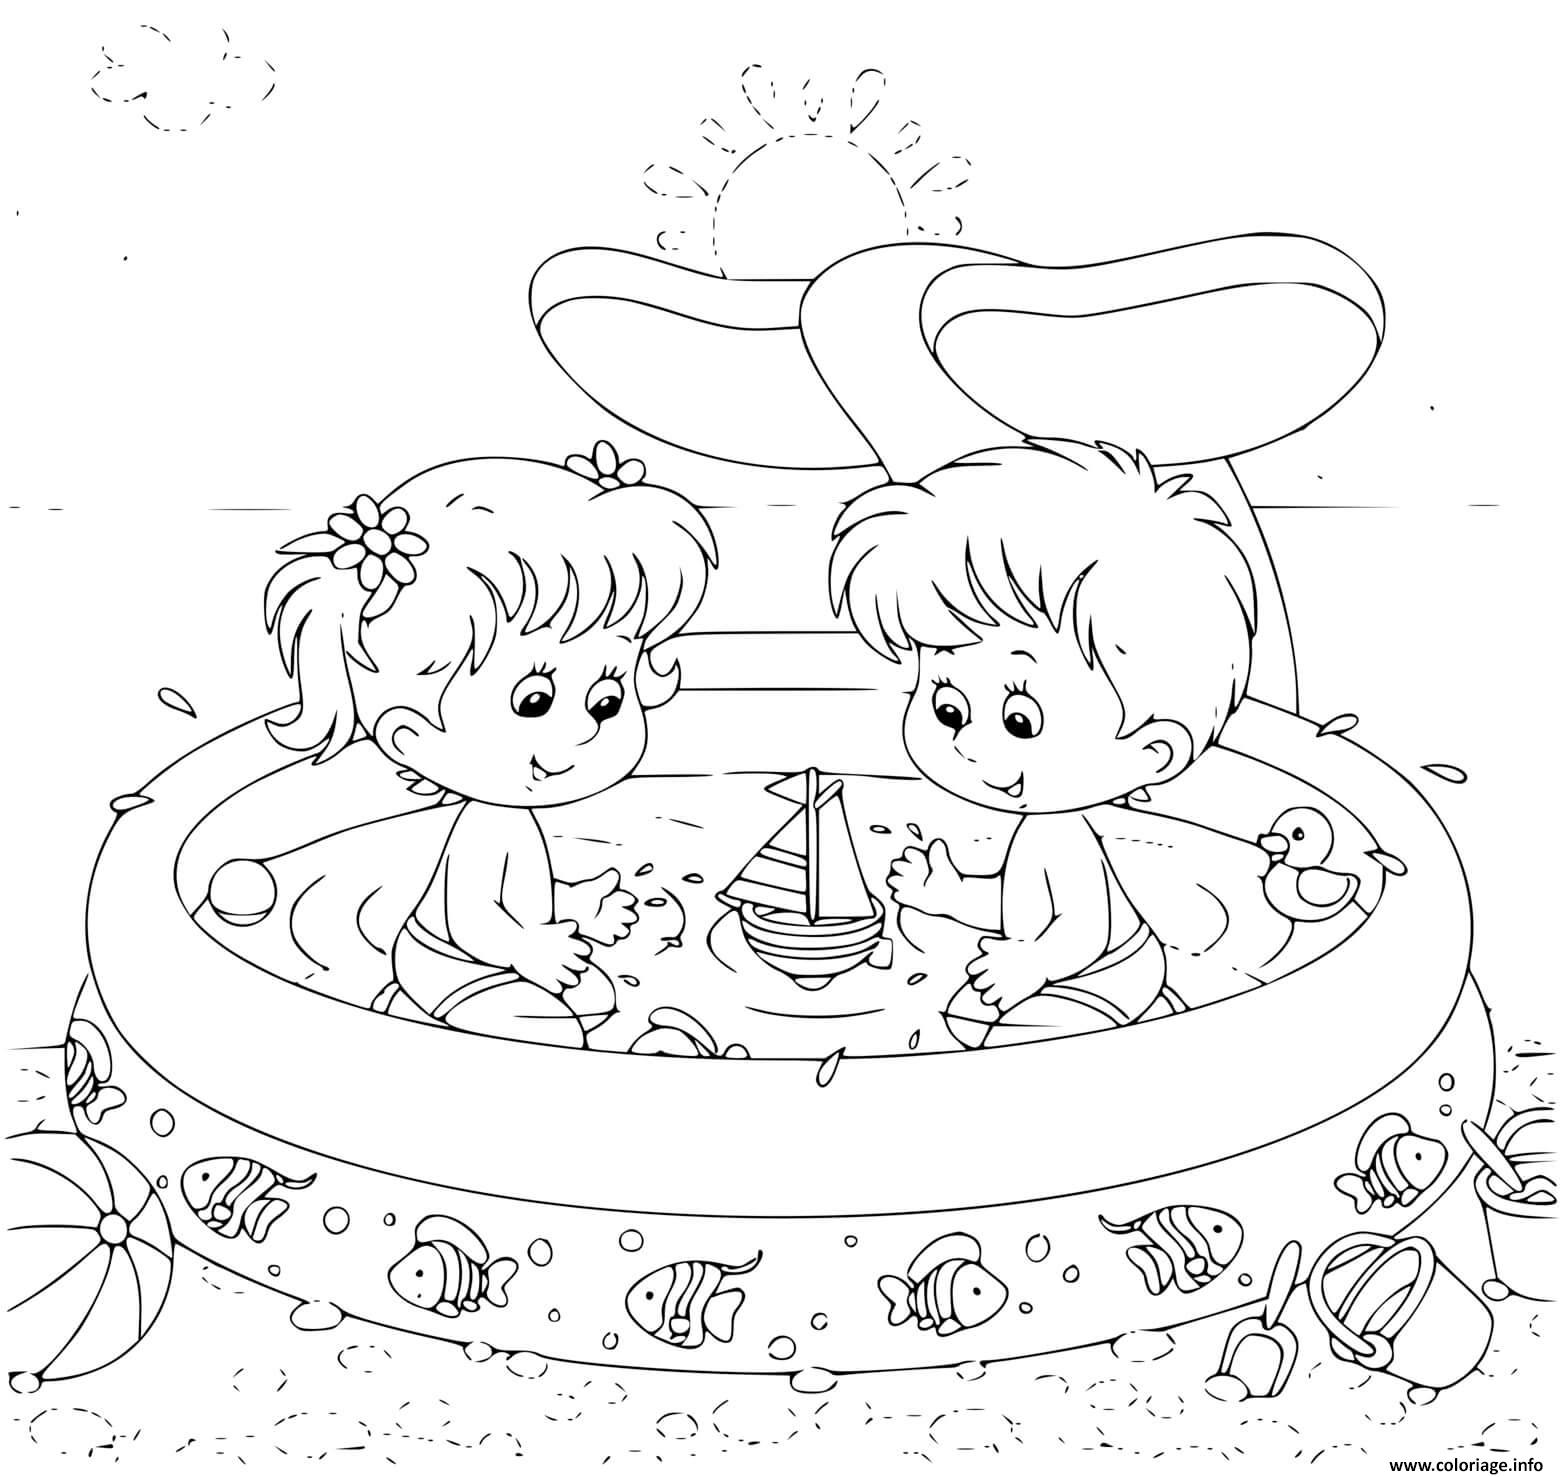 Dessin petit garcon et petite fille dans une piscine gonflable pour enfants en vacances Coloriage Gratuit à Imprimer